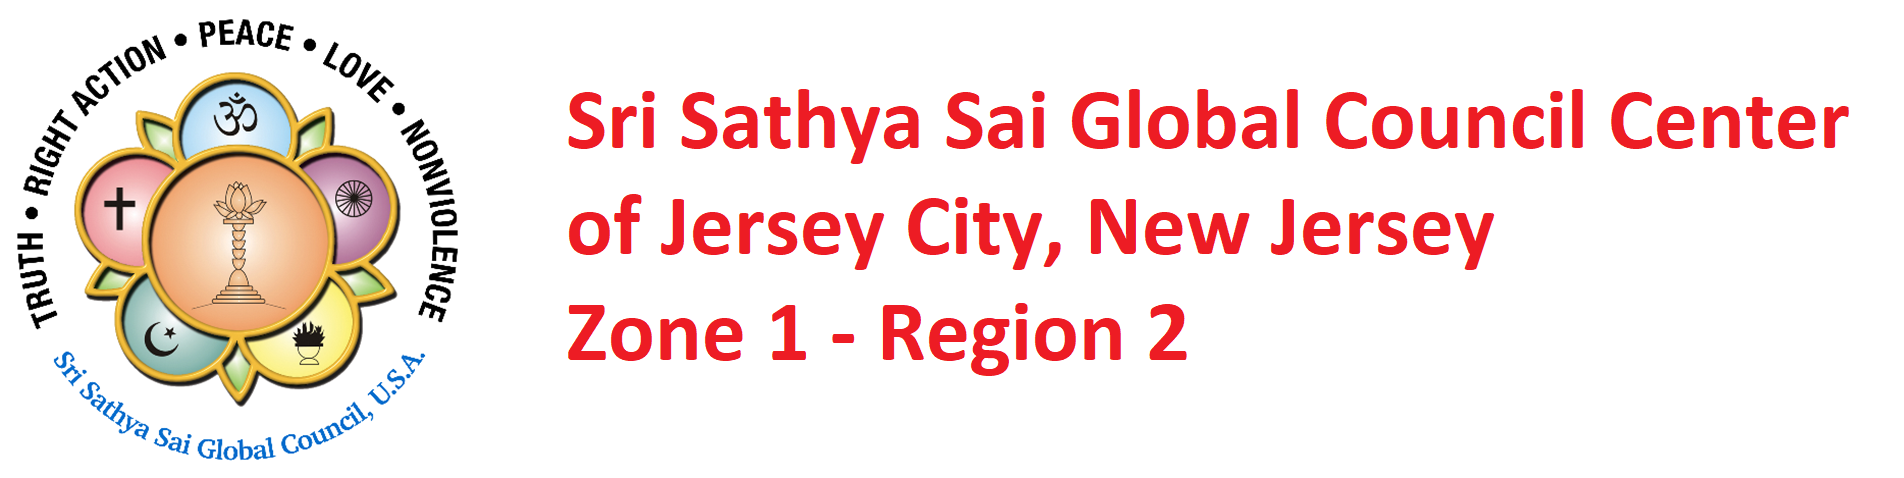 Sri Sathya Sai Baba Center of Jersey City Logo